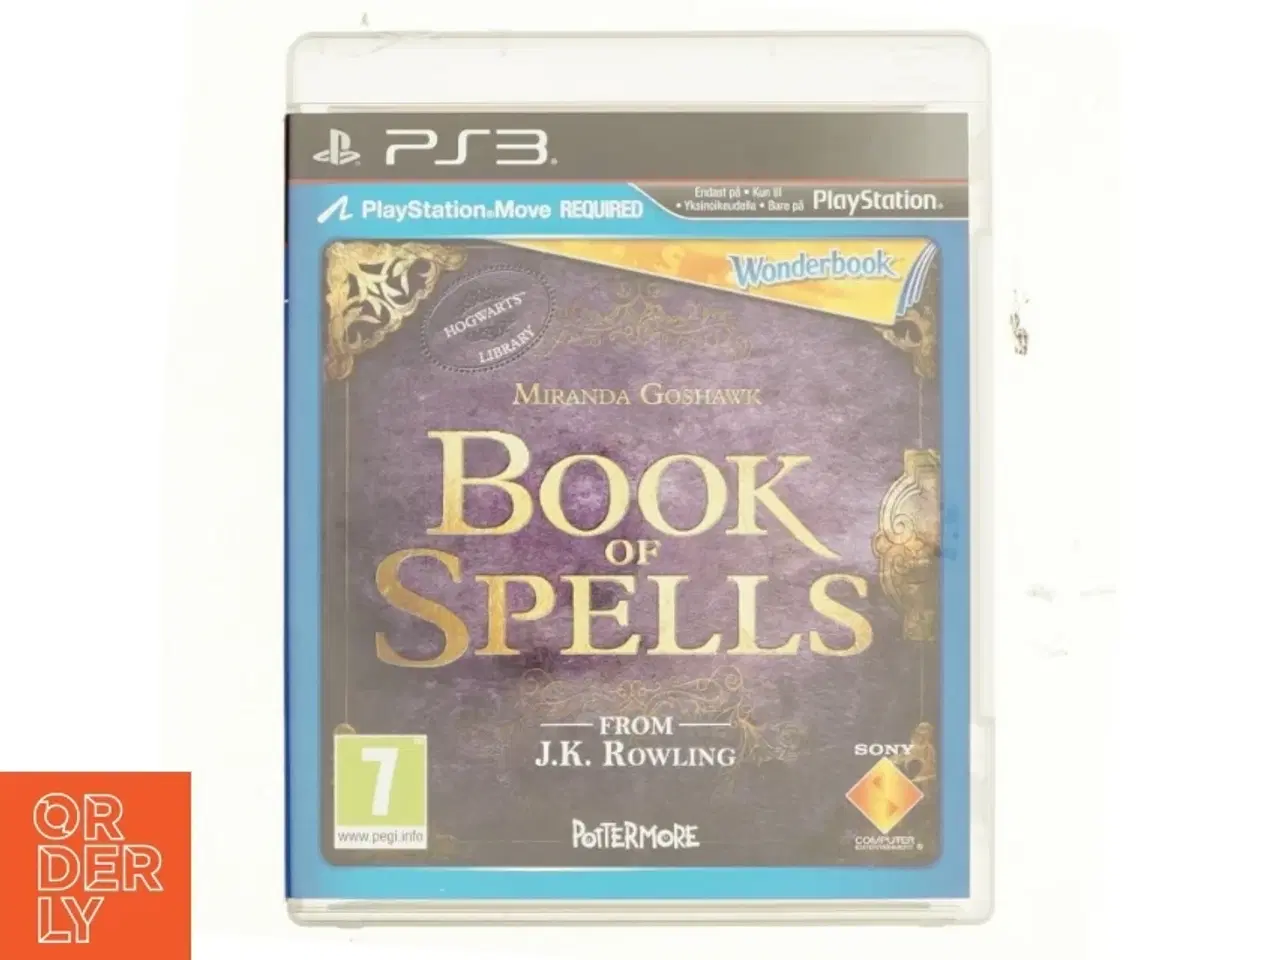 Billede 1 - PS3, Book of spells fra Playstation